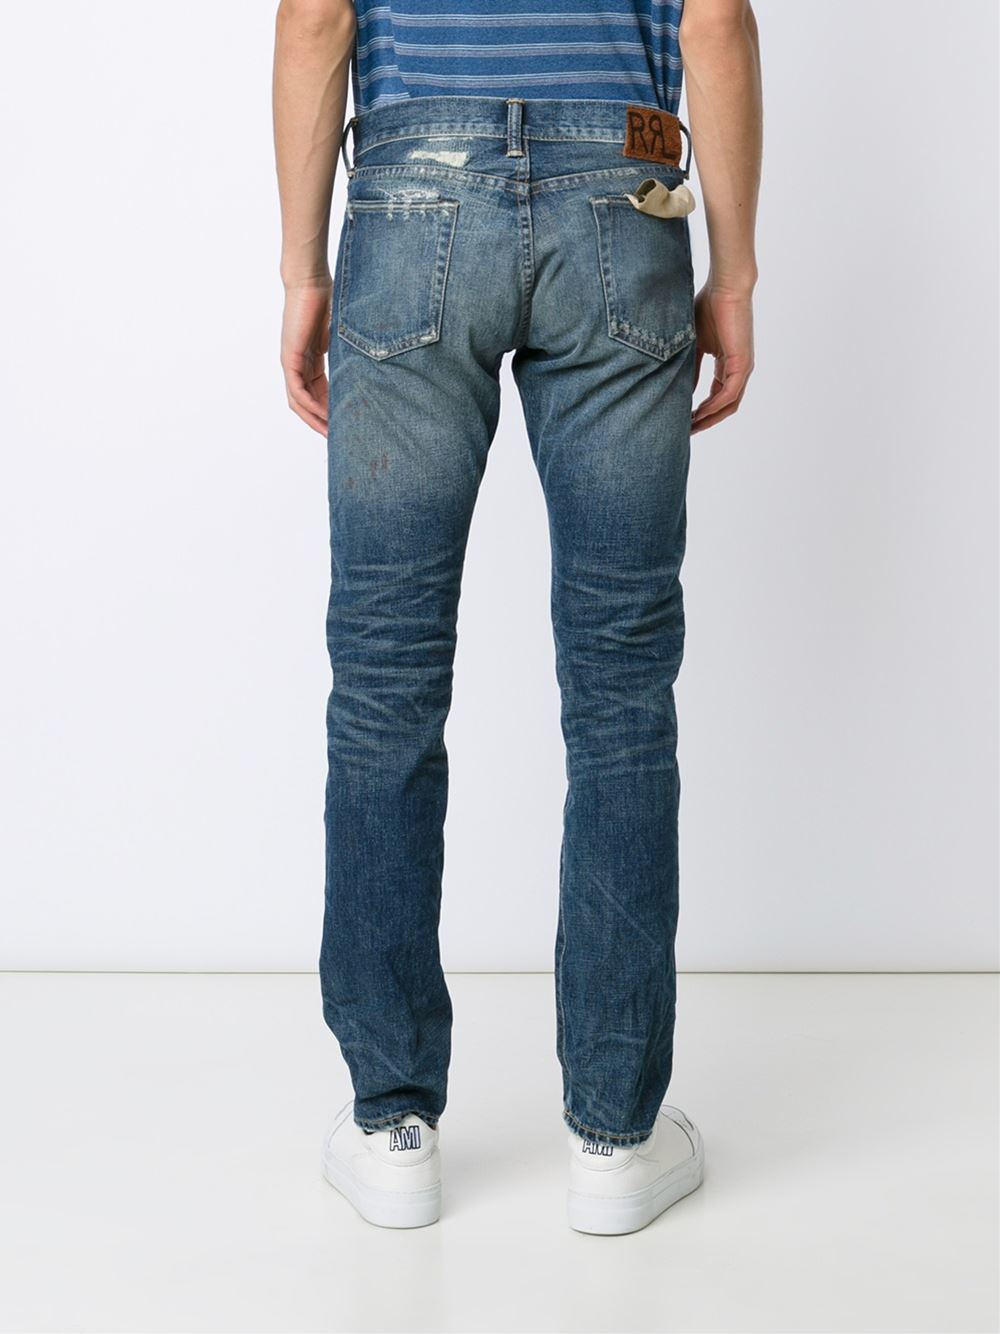 RRL Denim Distressed Jeans in Blue for Men - Lyst